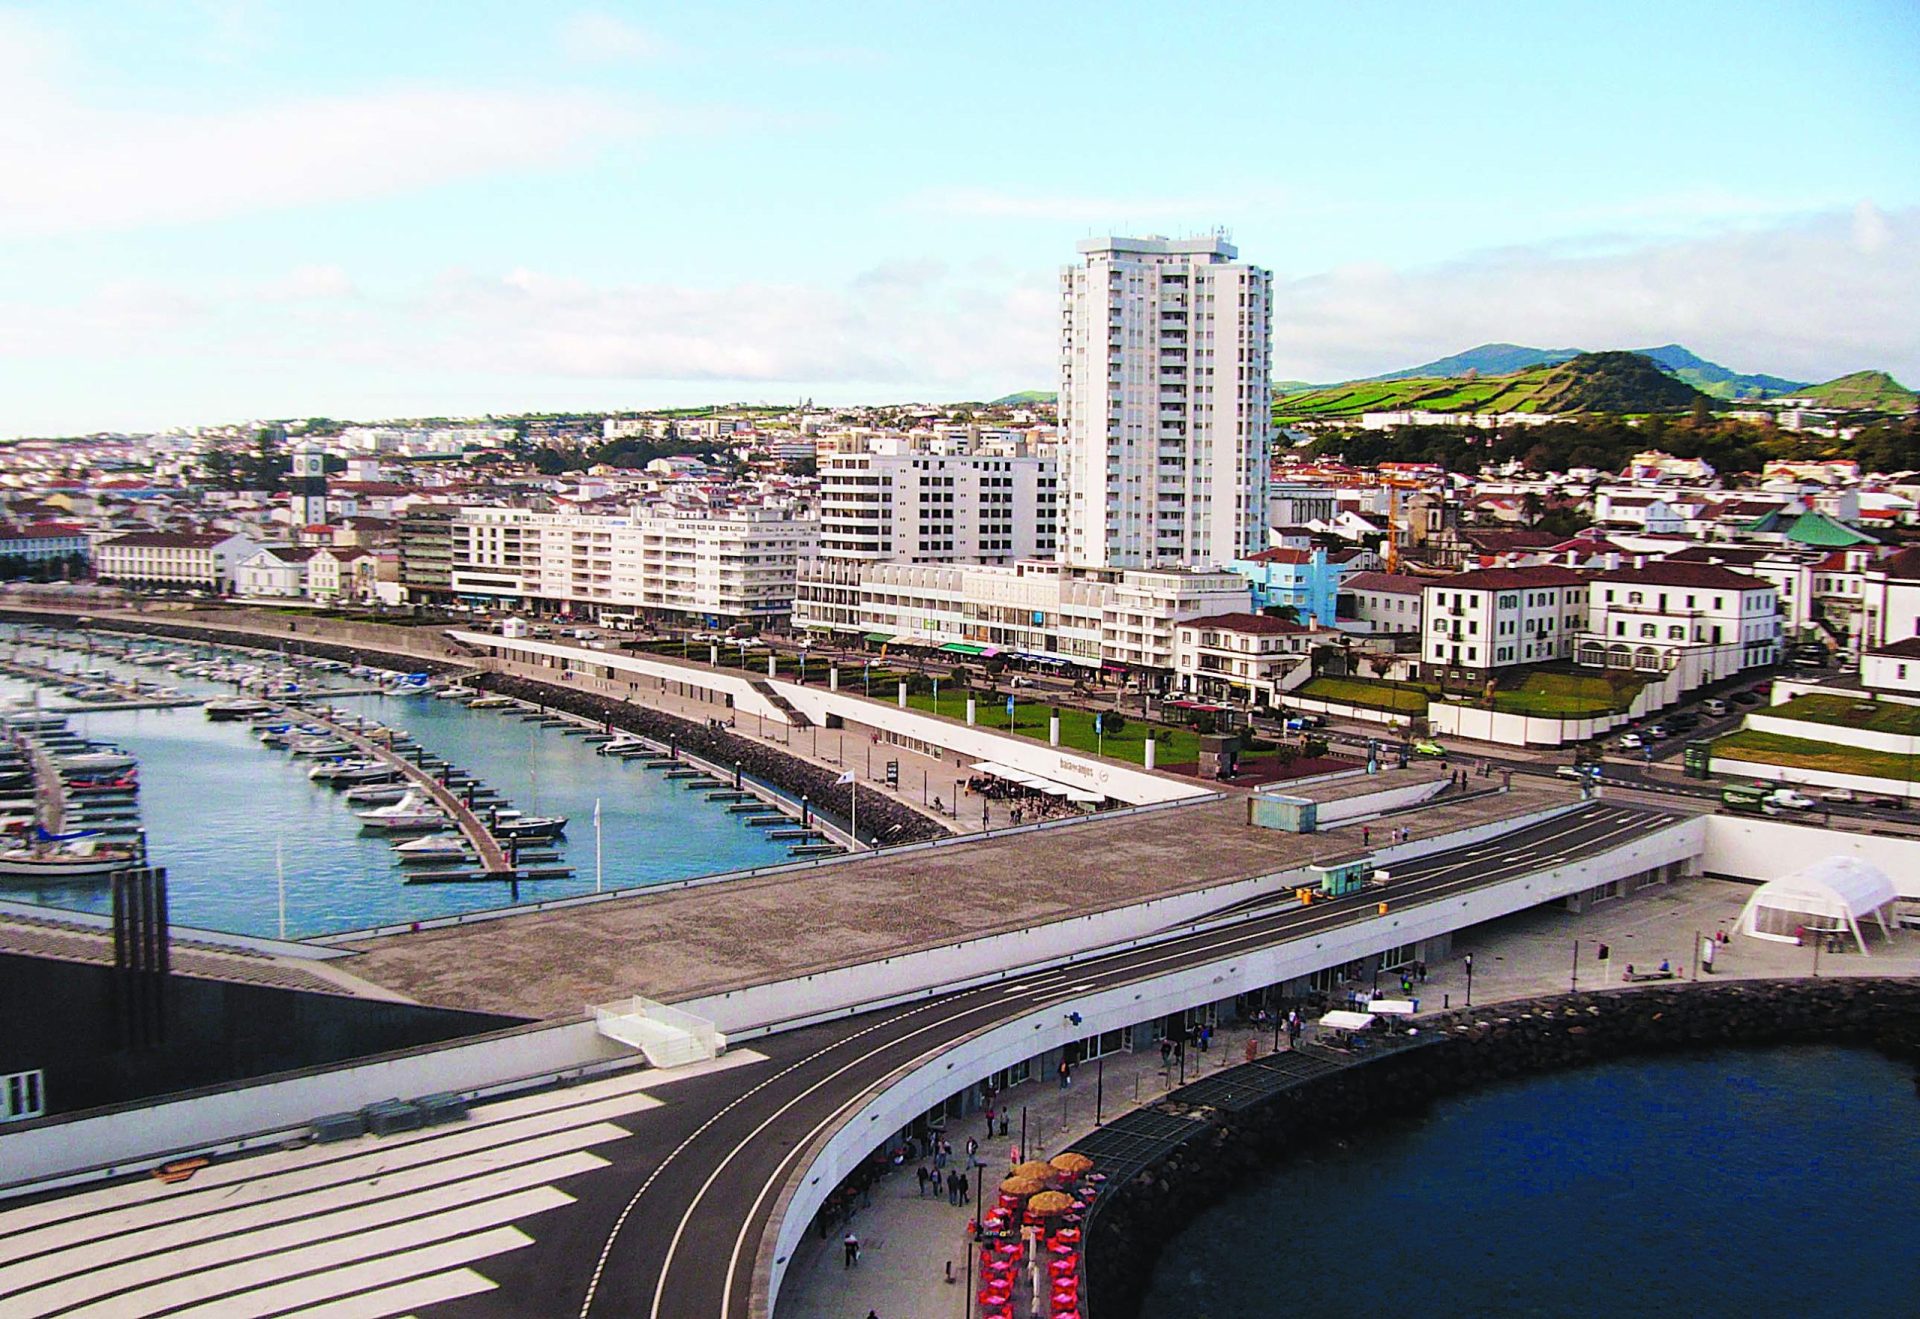 Chegada das Low Cost anima economia dos Açores